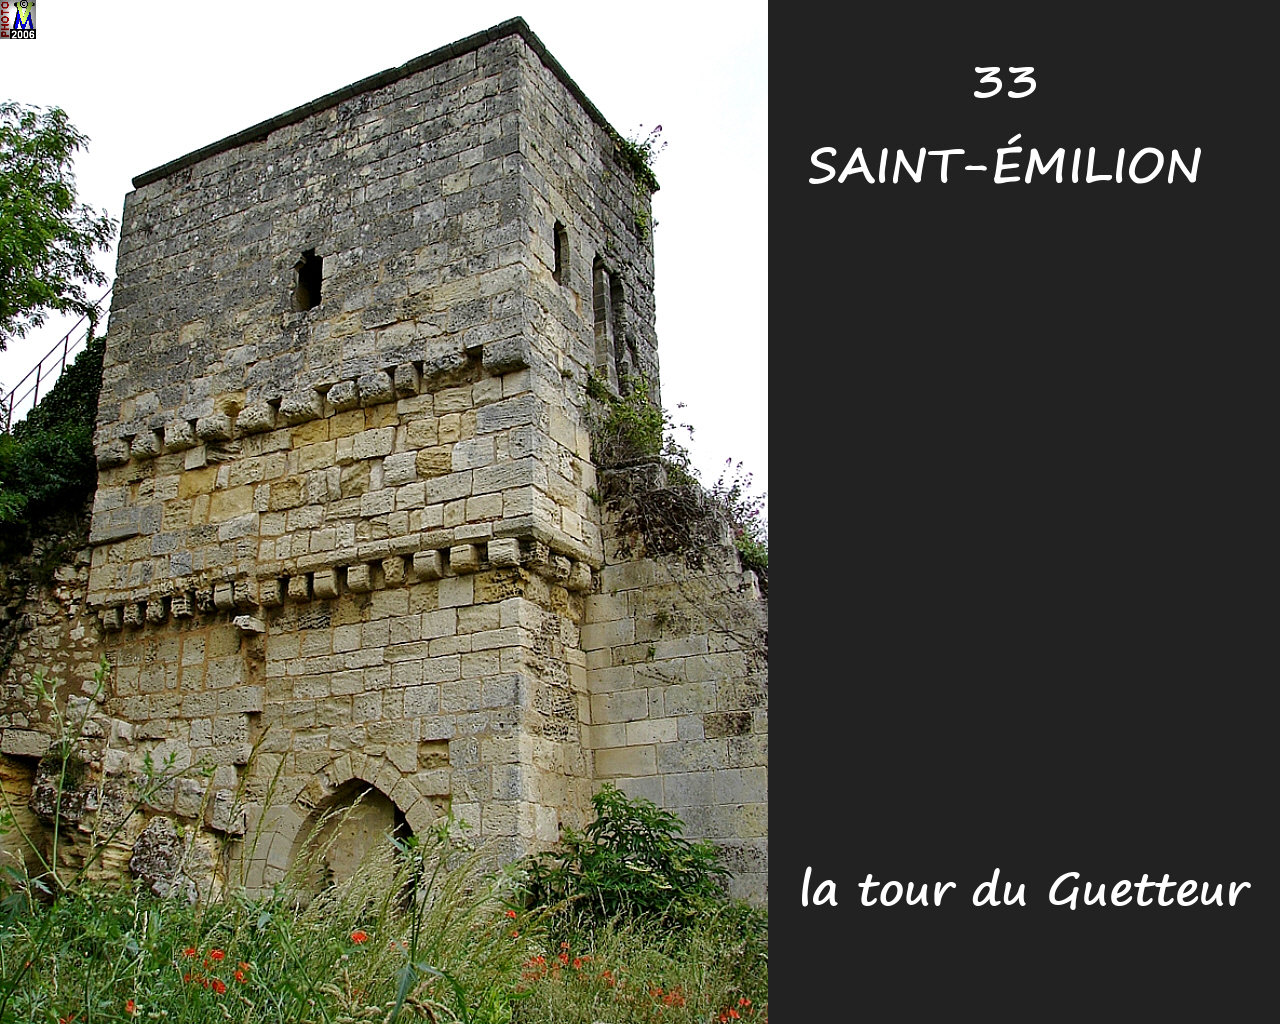 33StEMILION_tour_guetteur_102.jpg